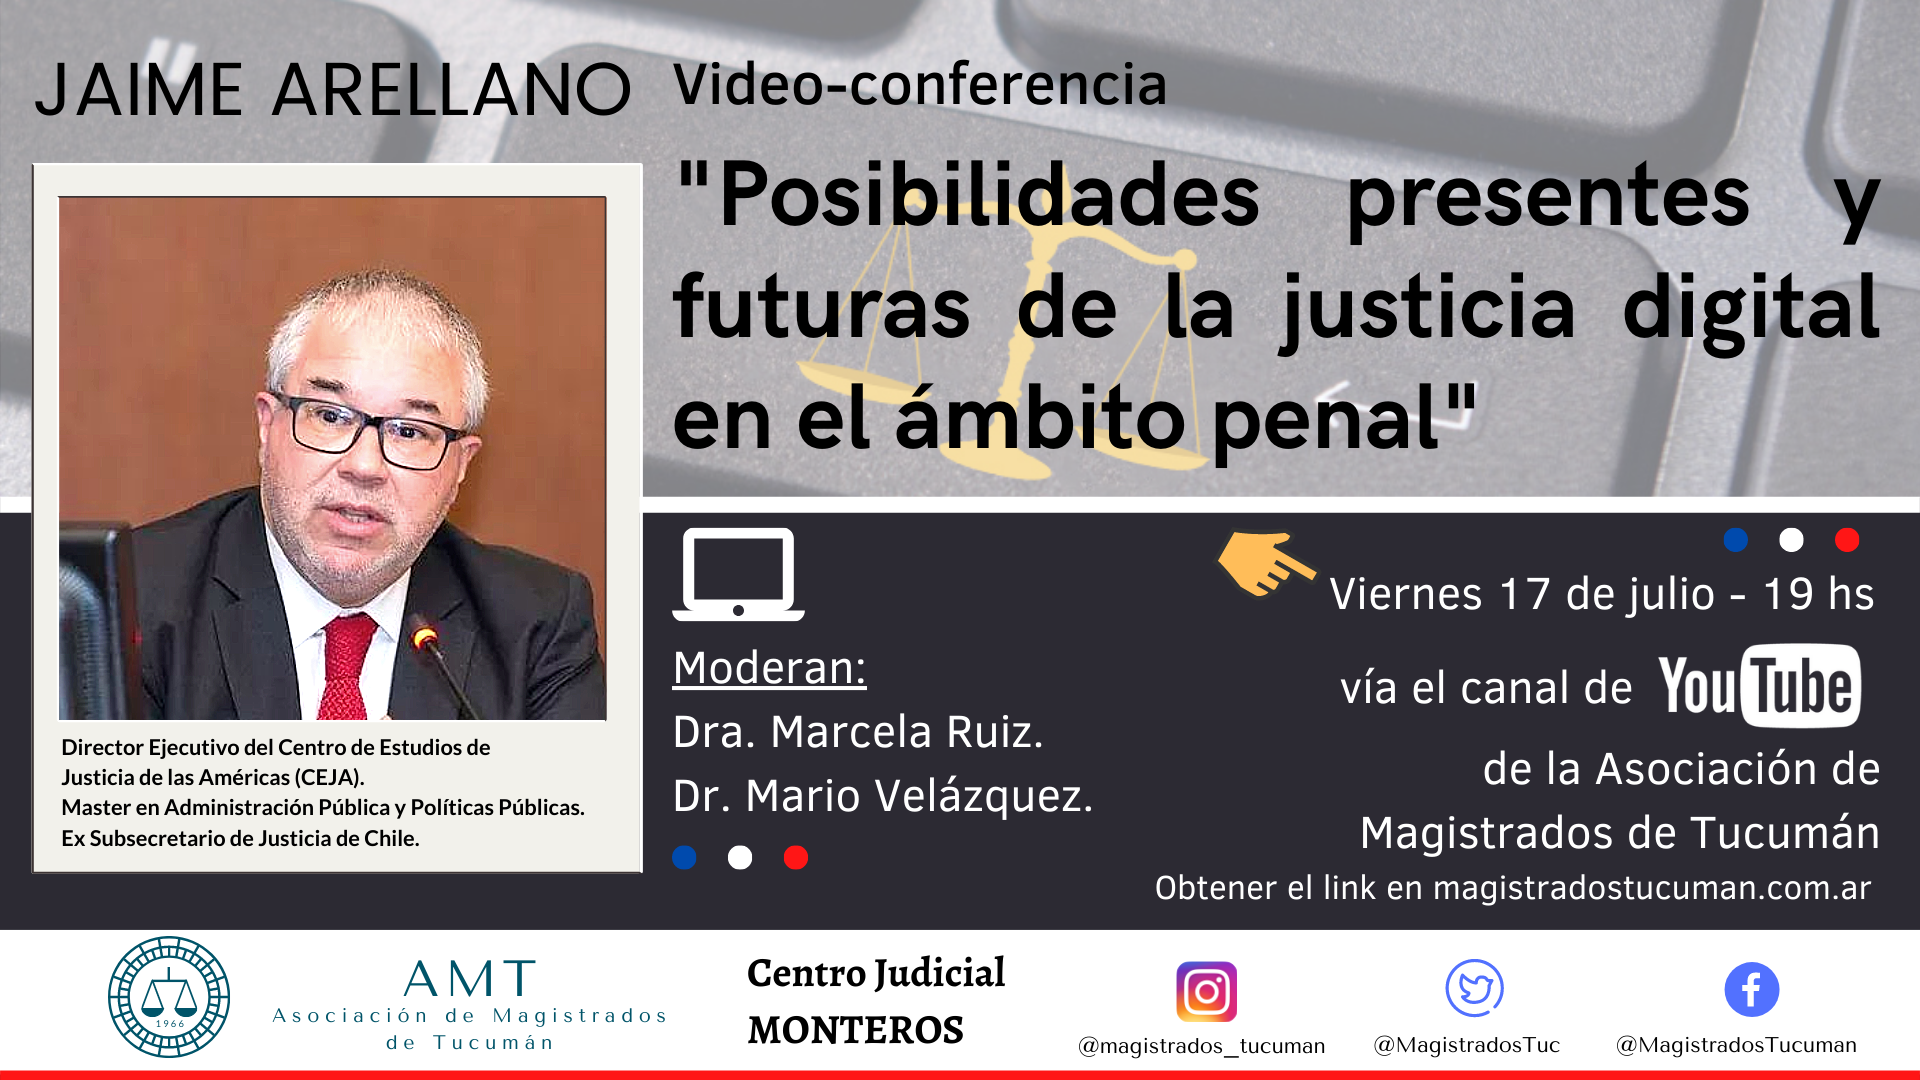 Vuelva a ver la conferencia de Jaime Arellano «Posibilidades presentes y futuras de la justicia digital en el ámbito penal»